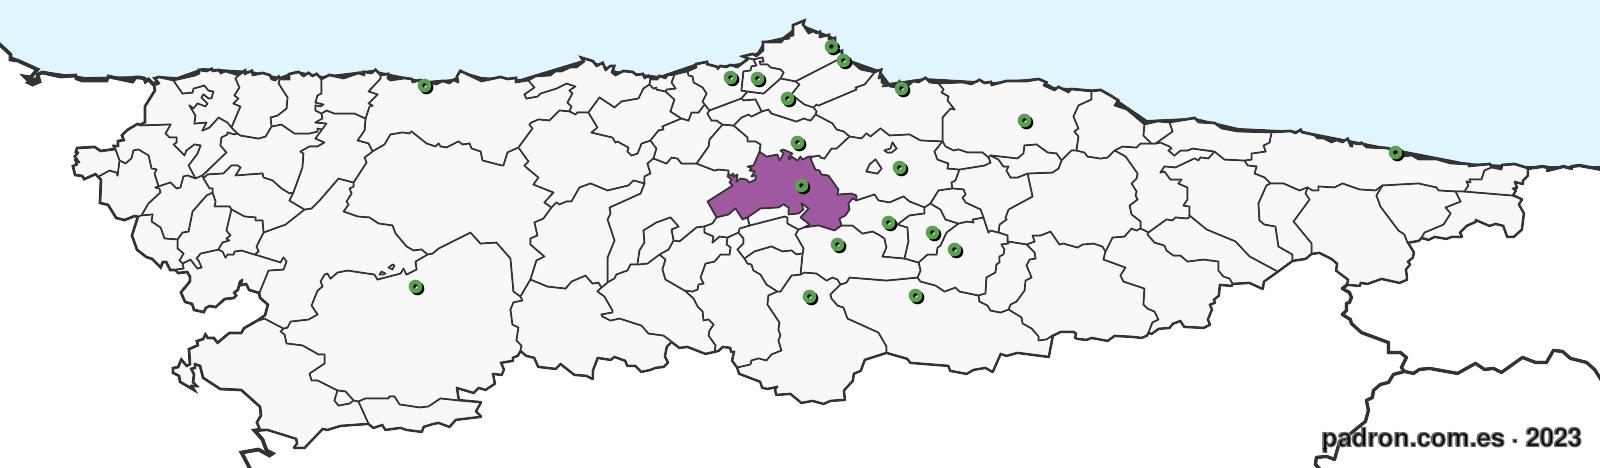 ruandeses en asturias.